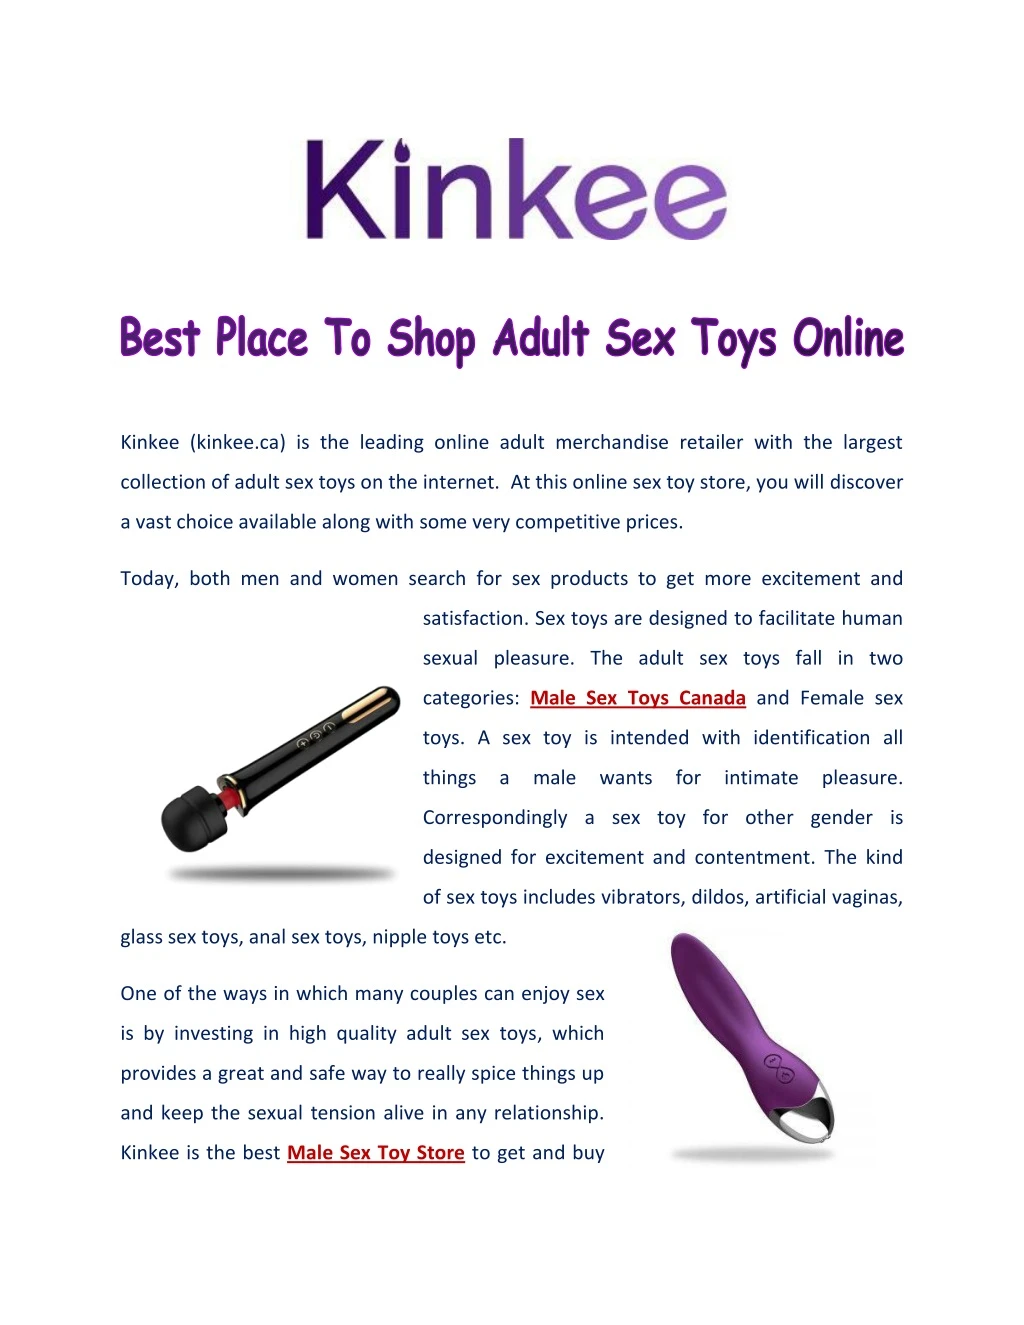 kinkee kinkee ca is the leading online adult